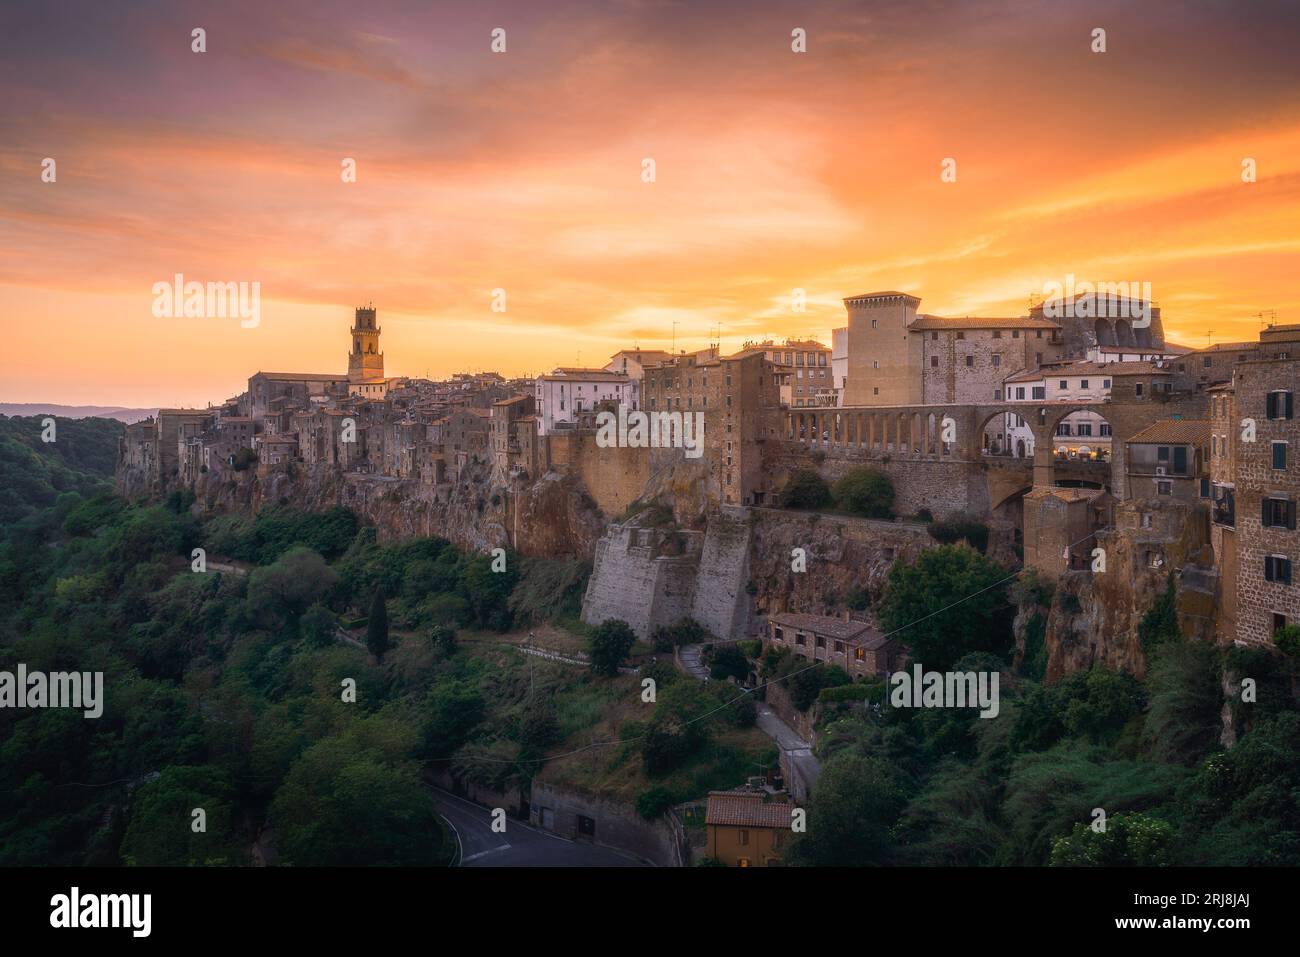 Città medievale italiana al tramonto, Pitigliano in provincia di Grosseto, nel sud della Toscana, Italia Foto Stock